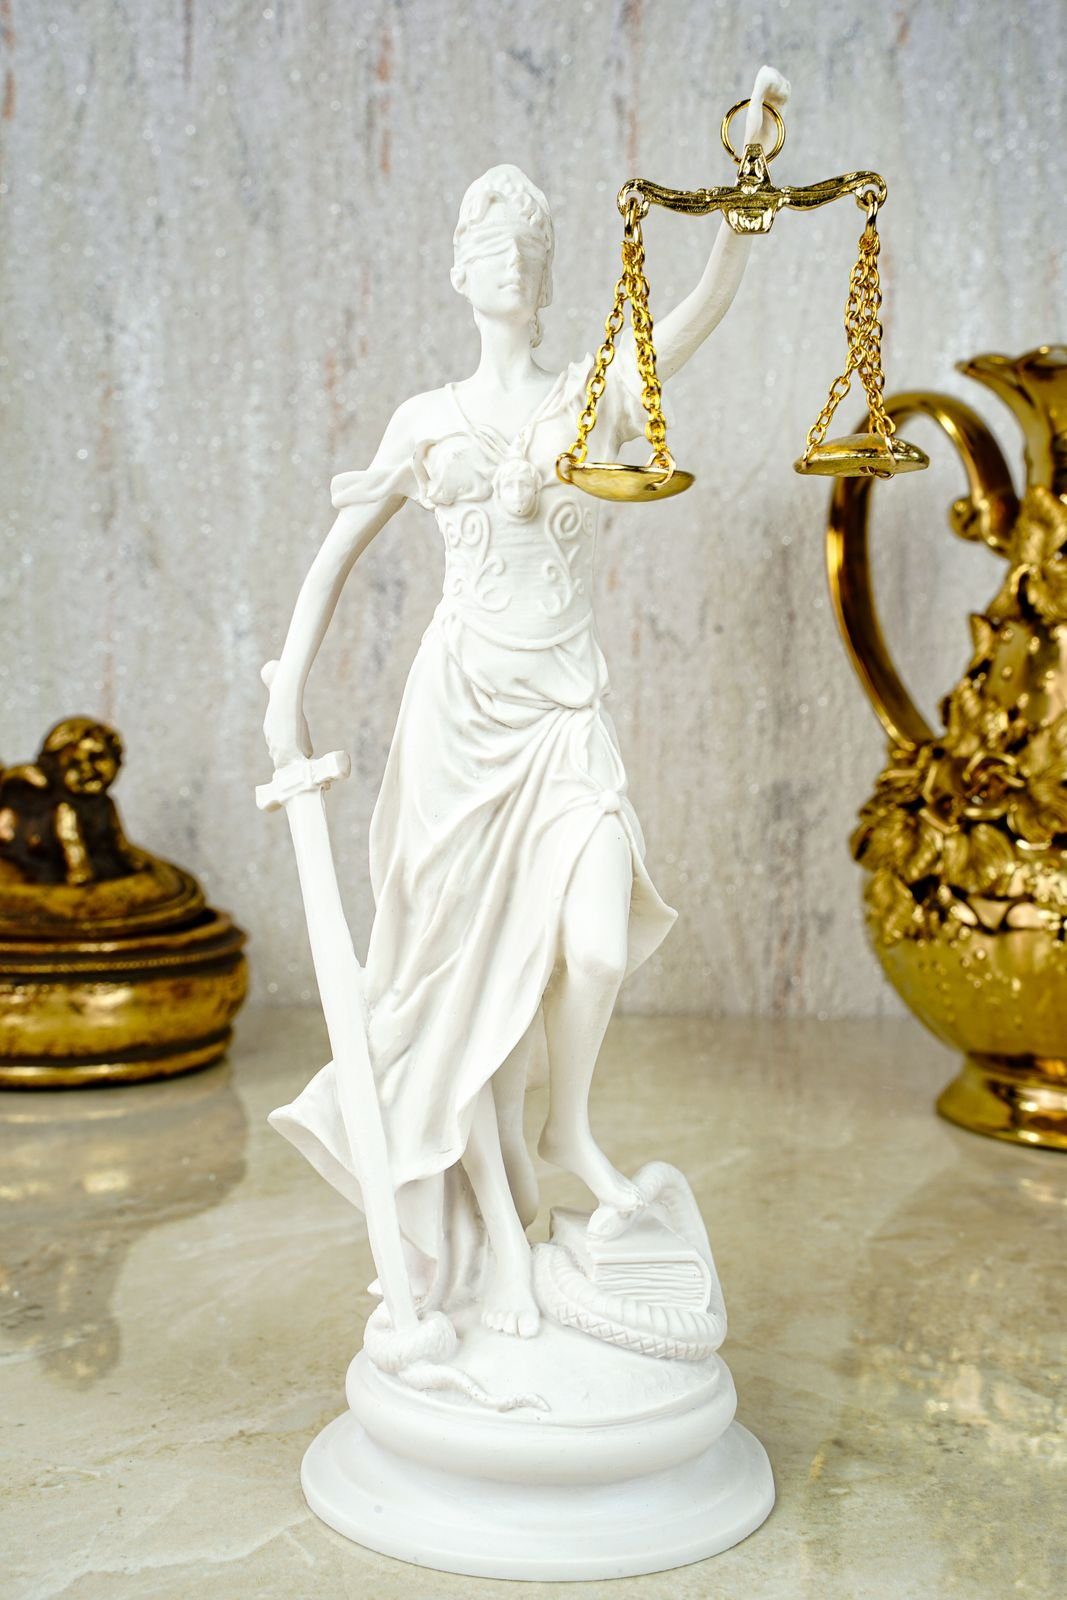 Kremers Schatzkiste Dekofigur Alabaster Justitia Göttin Figur Skulptur runder Sockel BGB Recht Gerechtigkeit 21 cm weiß gold